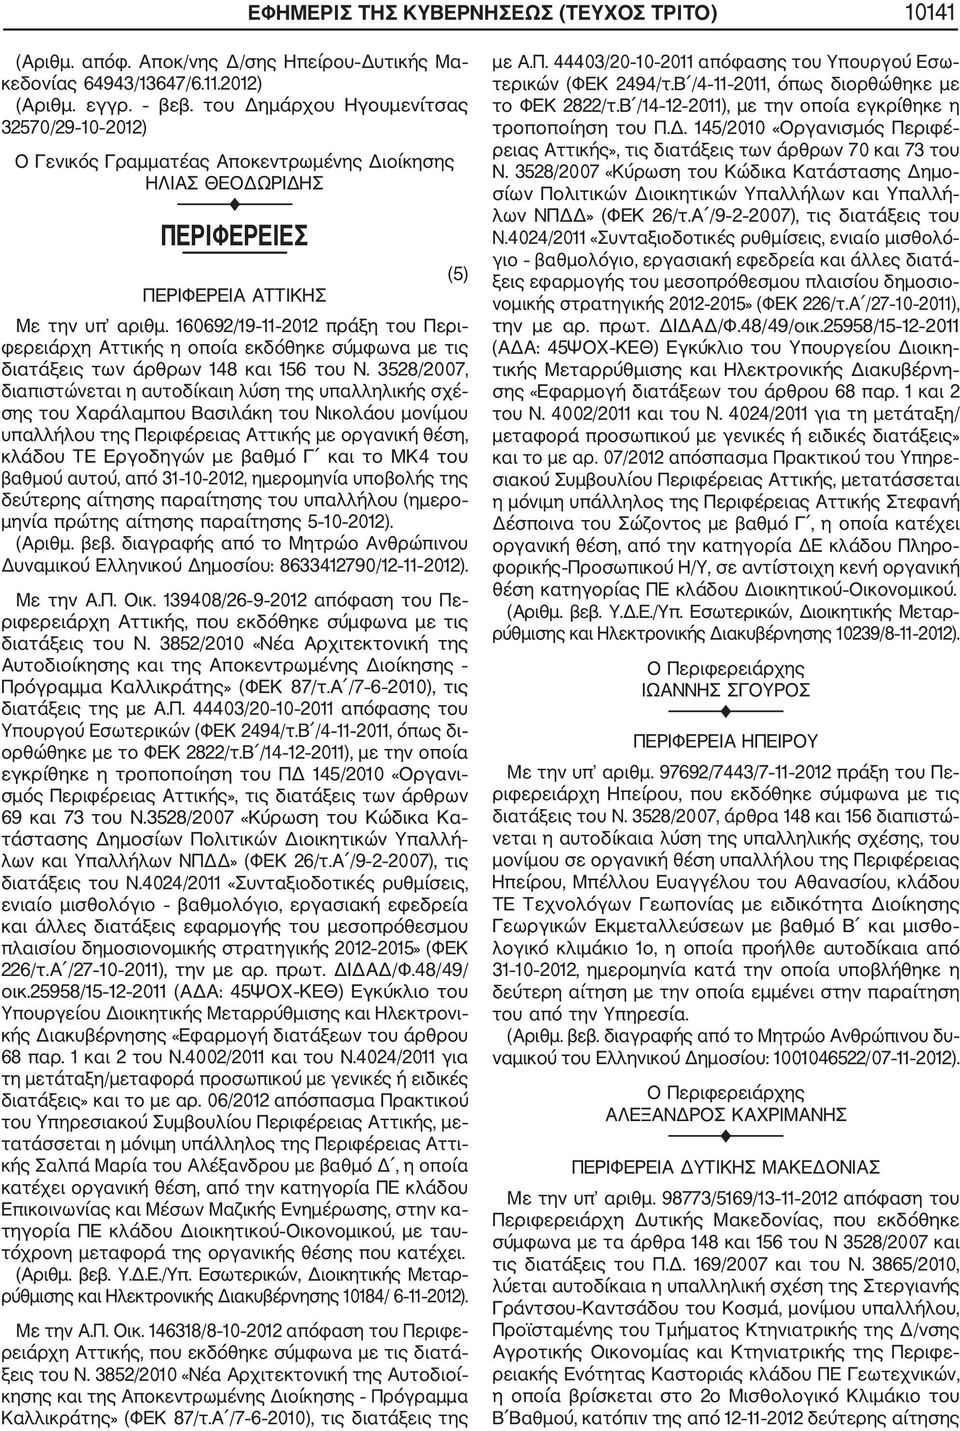 160692/19 11 2012 πράξη του Περι φερειάρχη Αττικής η οποία εκδόθηκε σύμφωνα με τις διατάξεις των άρθρων 148 και 156 του Ν.